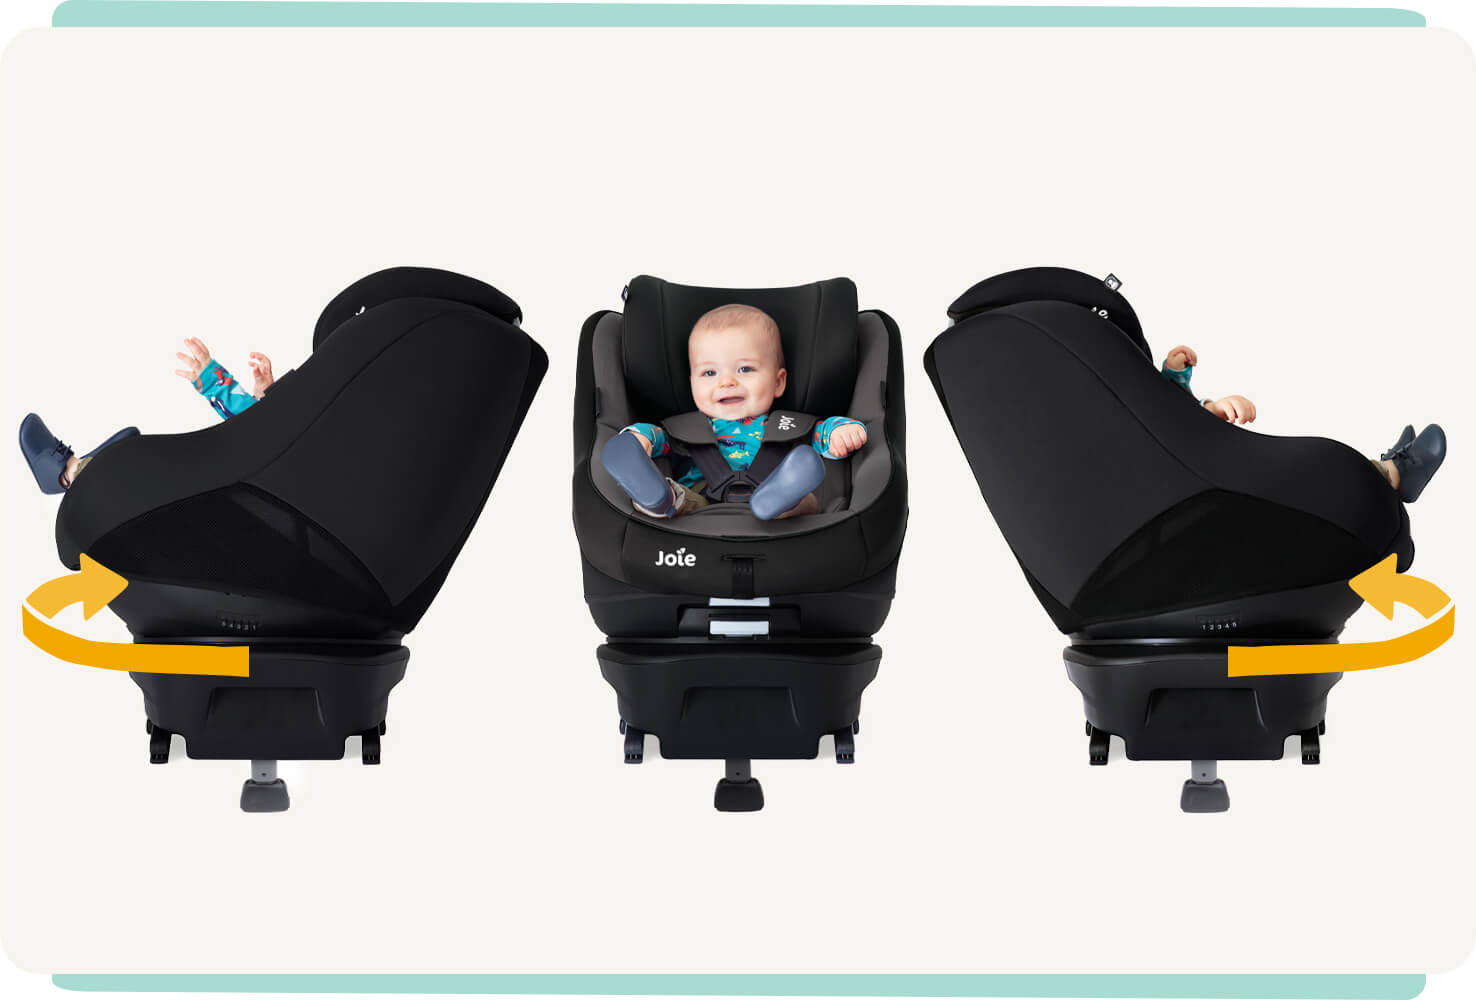 Siège auto Joie spin 360, coloris gris et noir, trois images avec bébé tournant à gauche et à droite. 